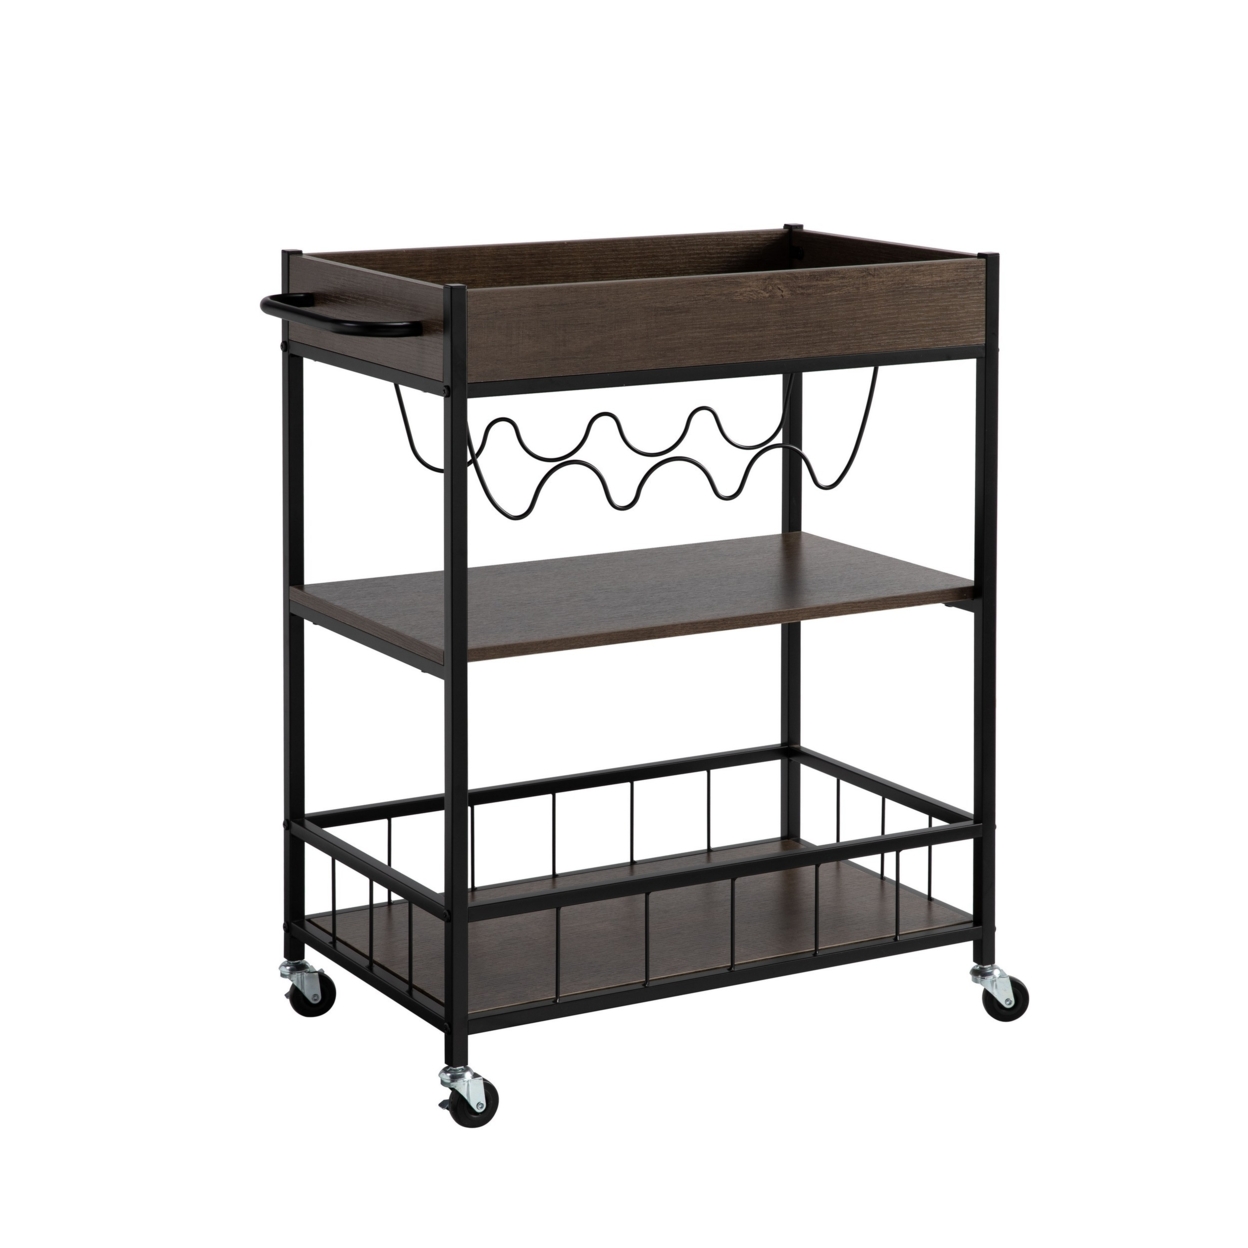 Kelcy 34 Inch Modern Kitchen Bar Cart, 3 Shelves, Wine Rack, Wheels, Brown- Saltoro Sherpi